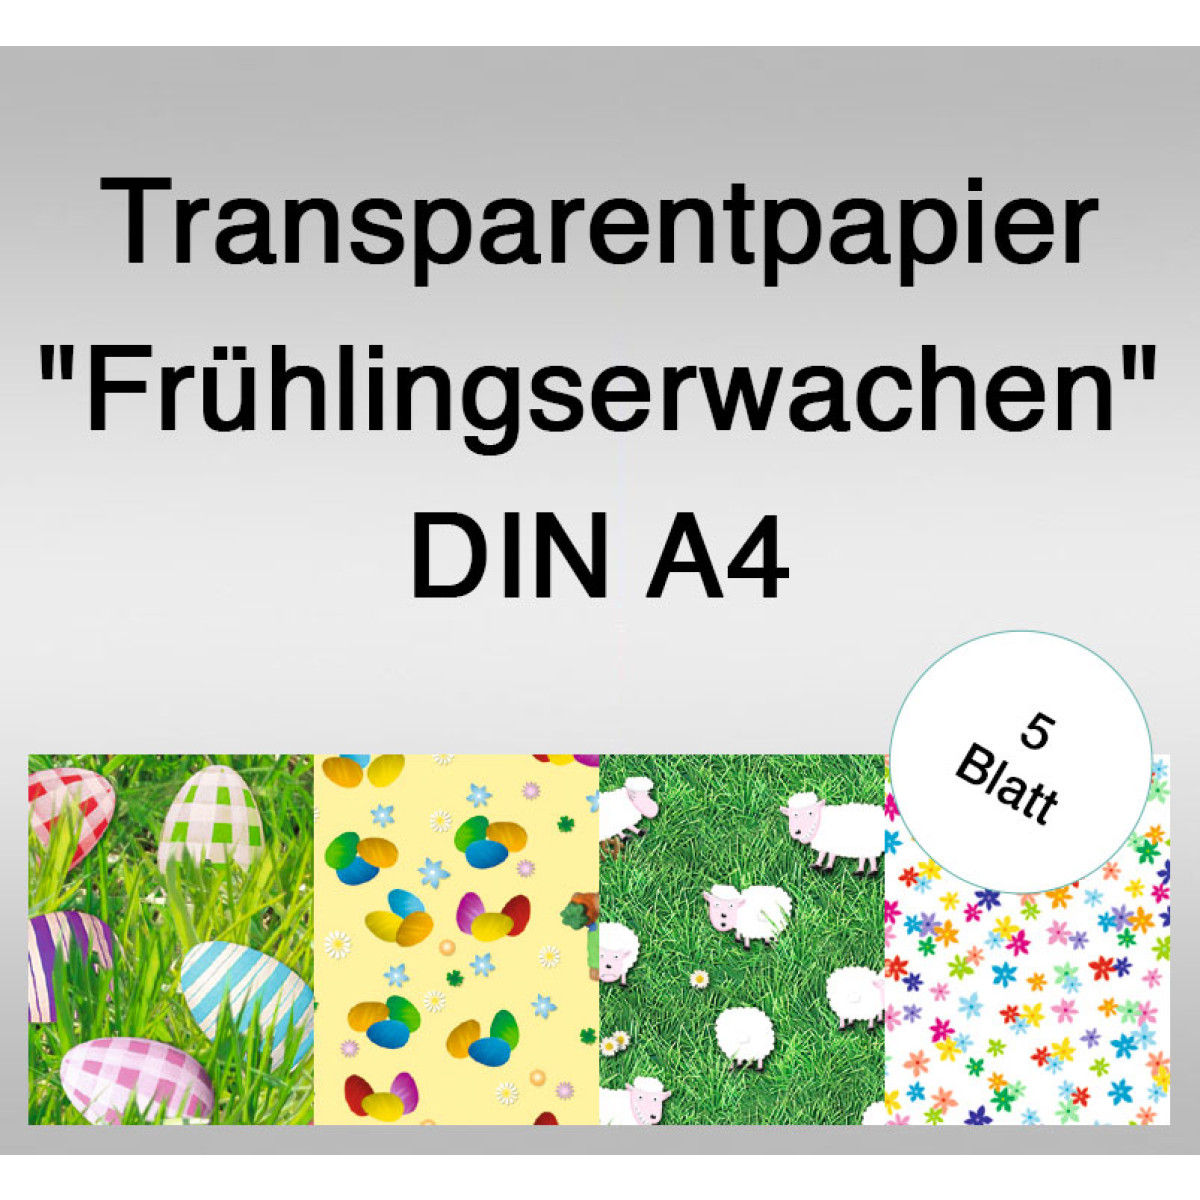 Transparentpapier "Frühlingserwachen" DIN A4 - 5 Blatt